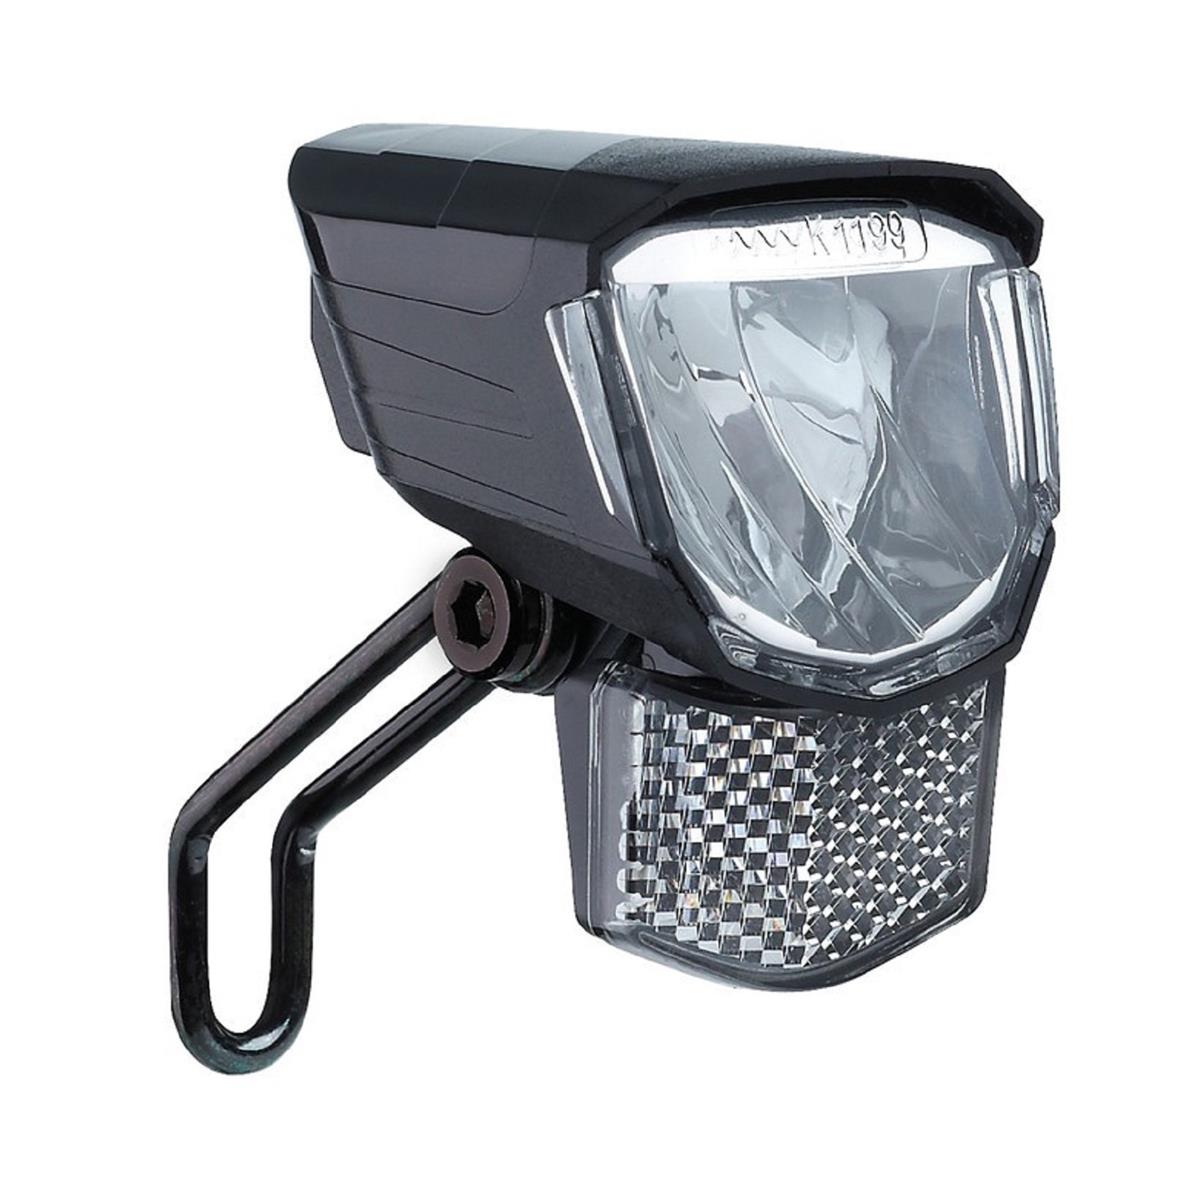 Büchel LED-Scheinwerfer  Tour 45 SL   ca.45 Lux mit Standlicht/Halter inkl. Reflektor